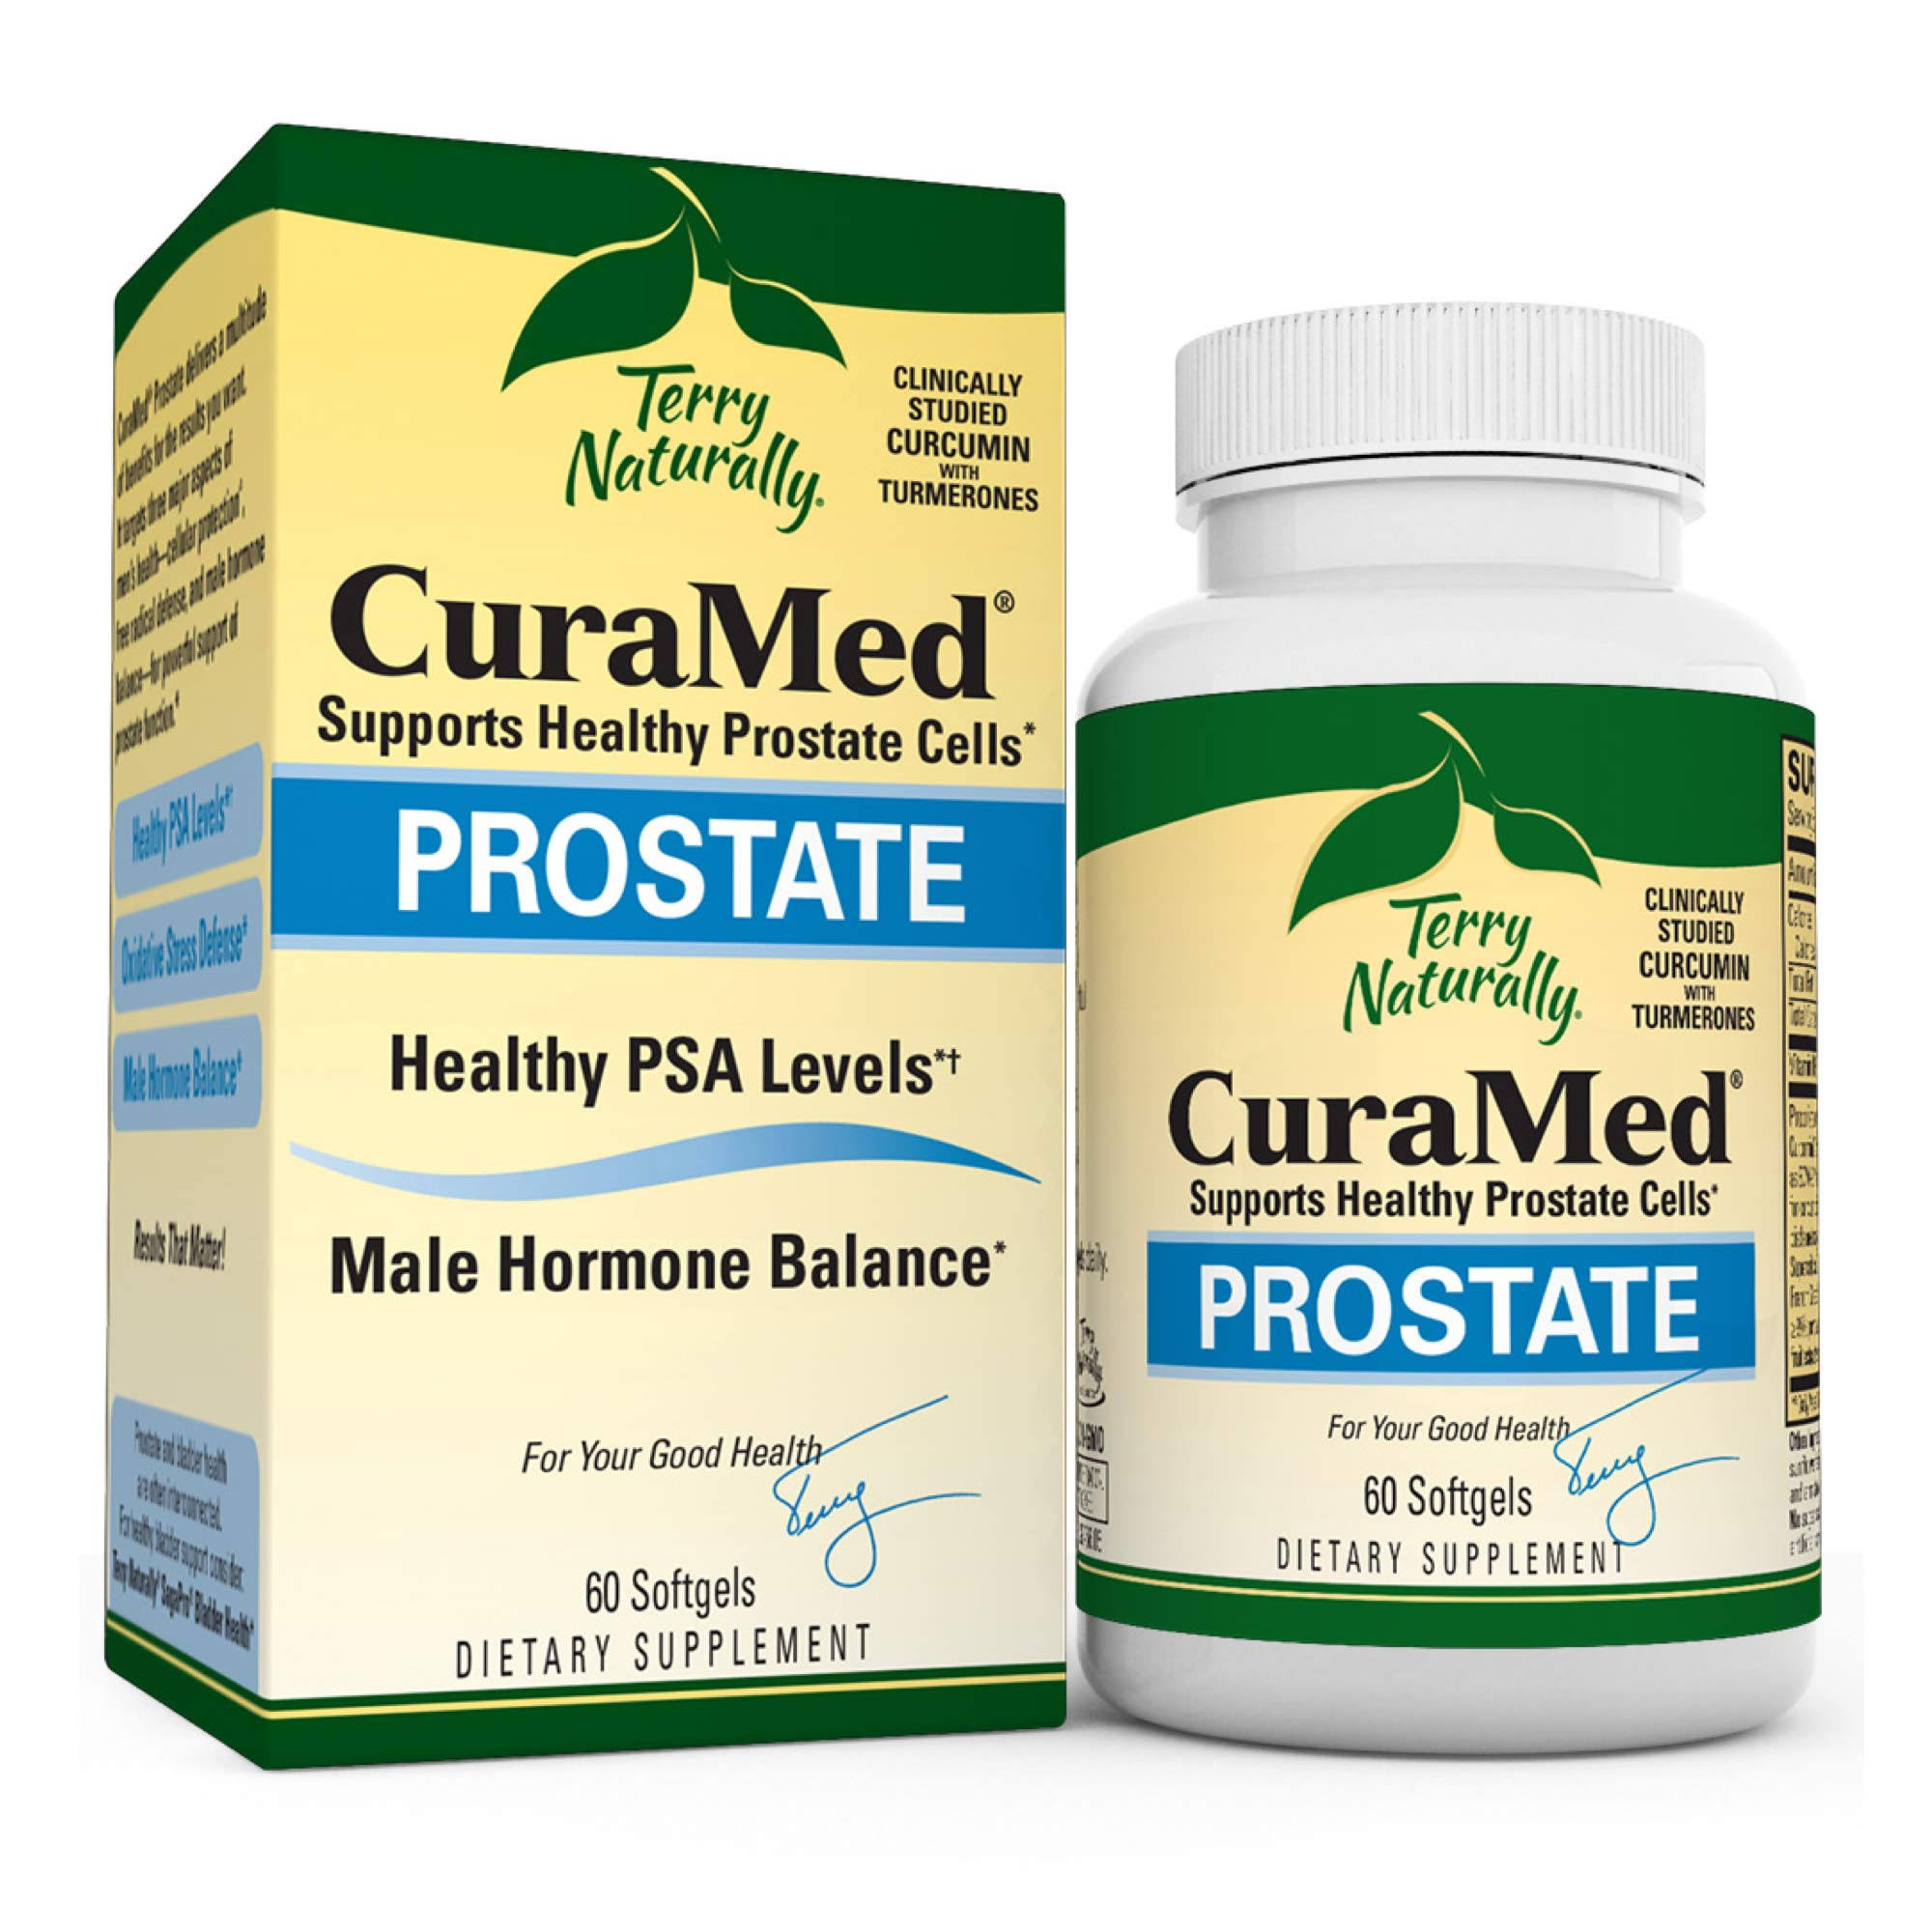 Curamed Prostate Supplement - 60 Softgels